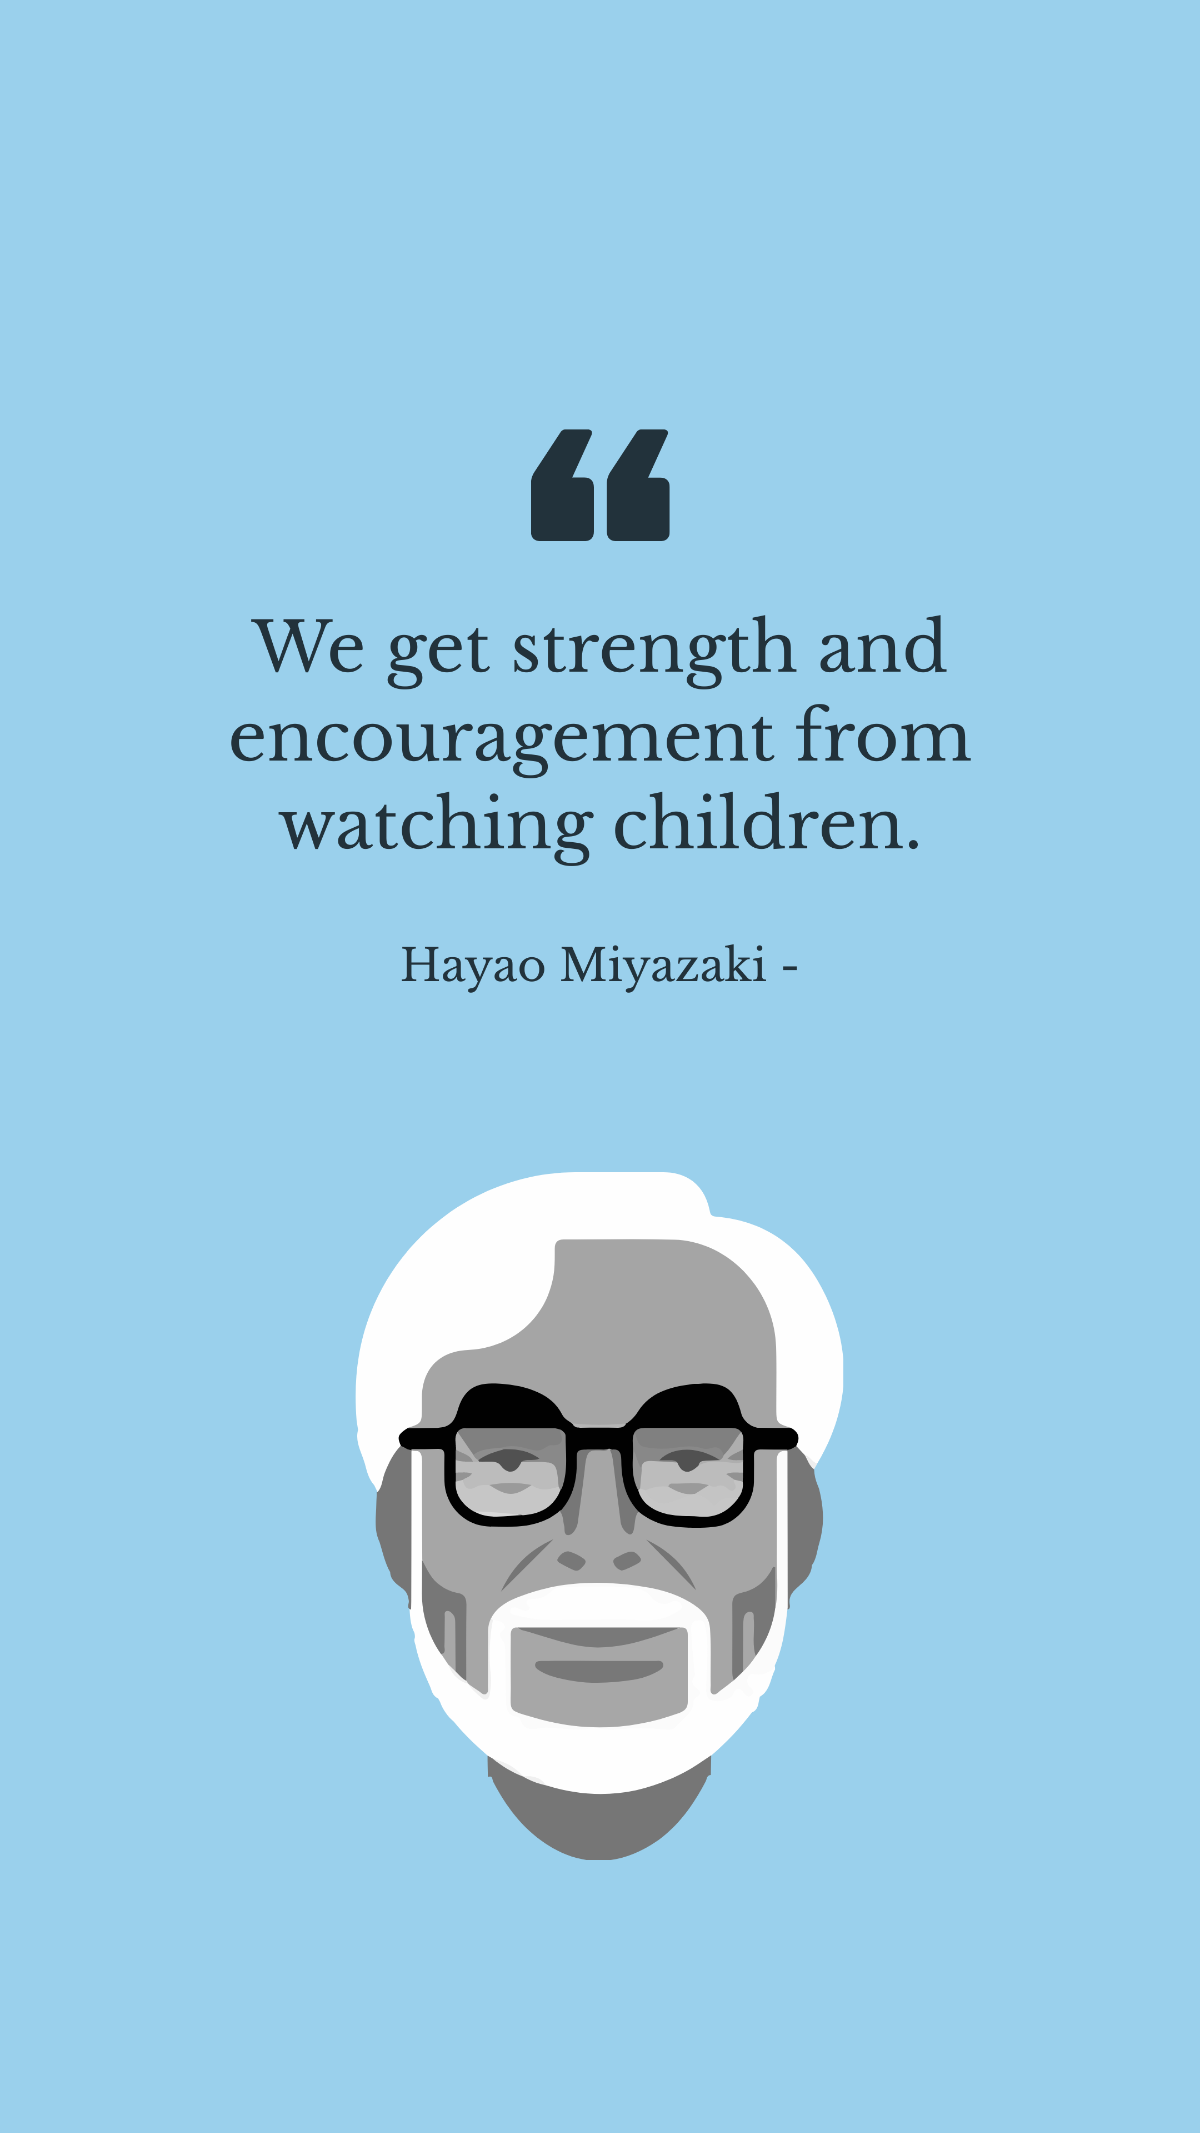 Hayao Miyazaki - We get strength and encouragement from watching children.